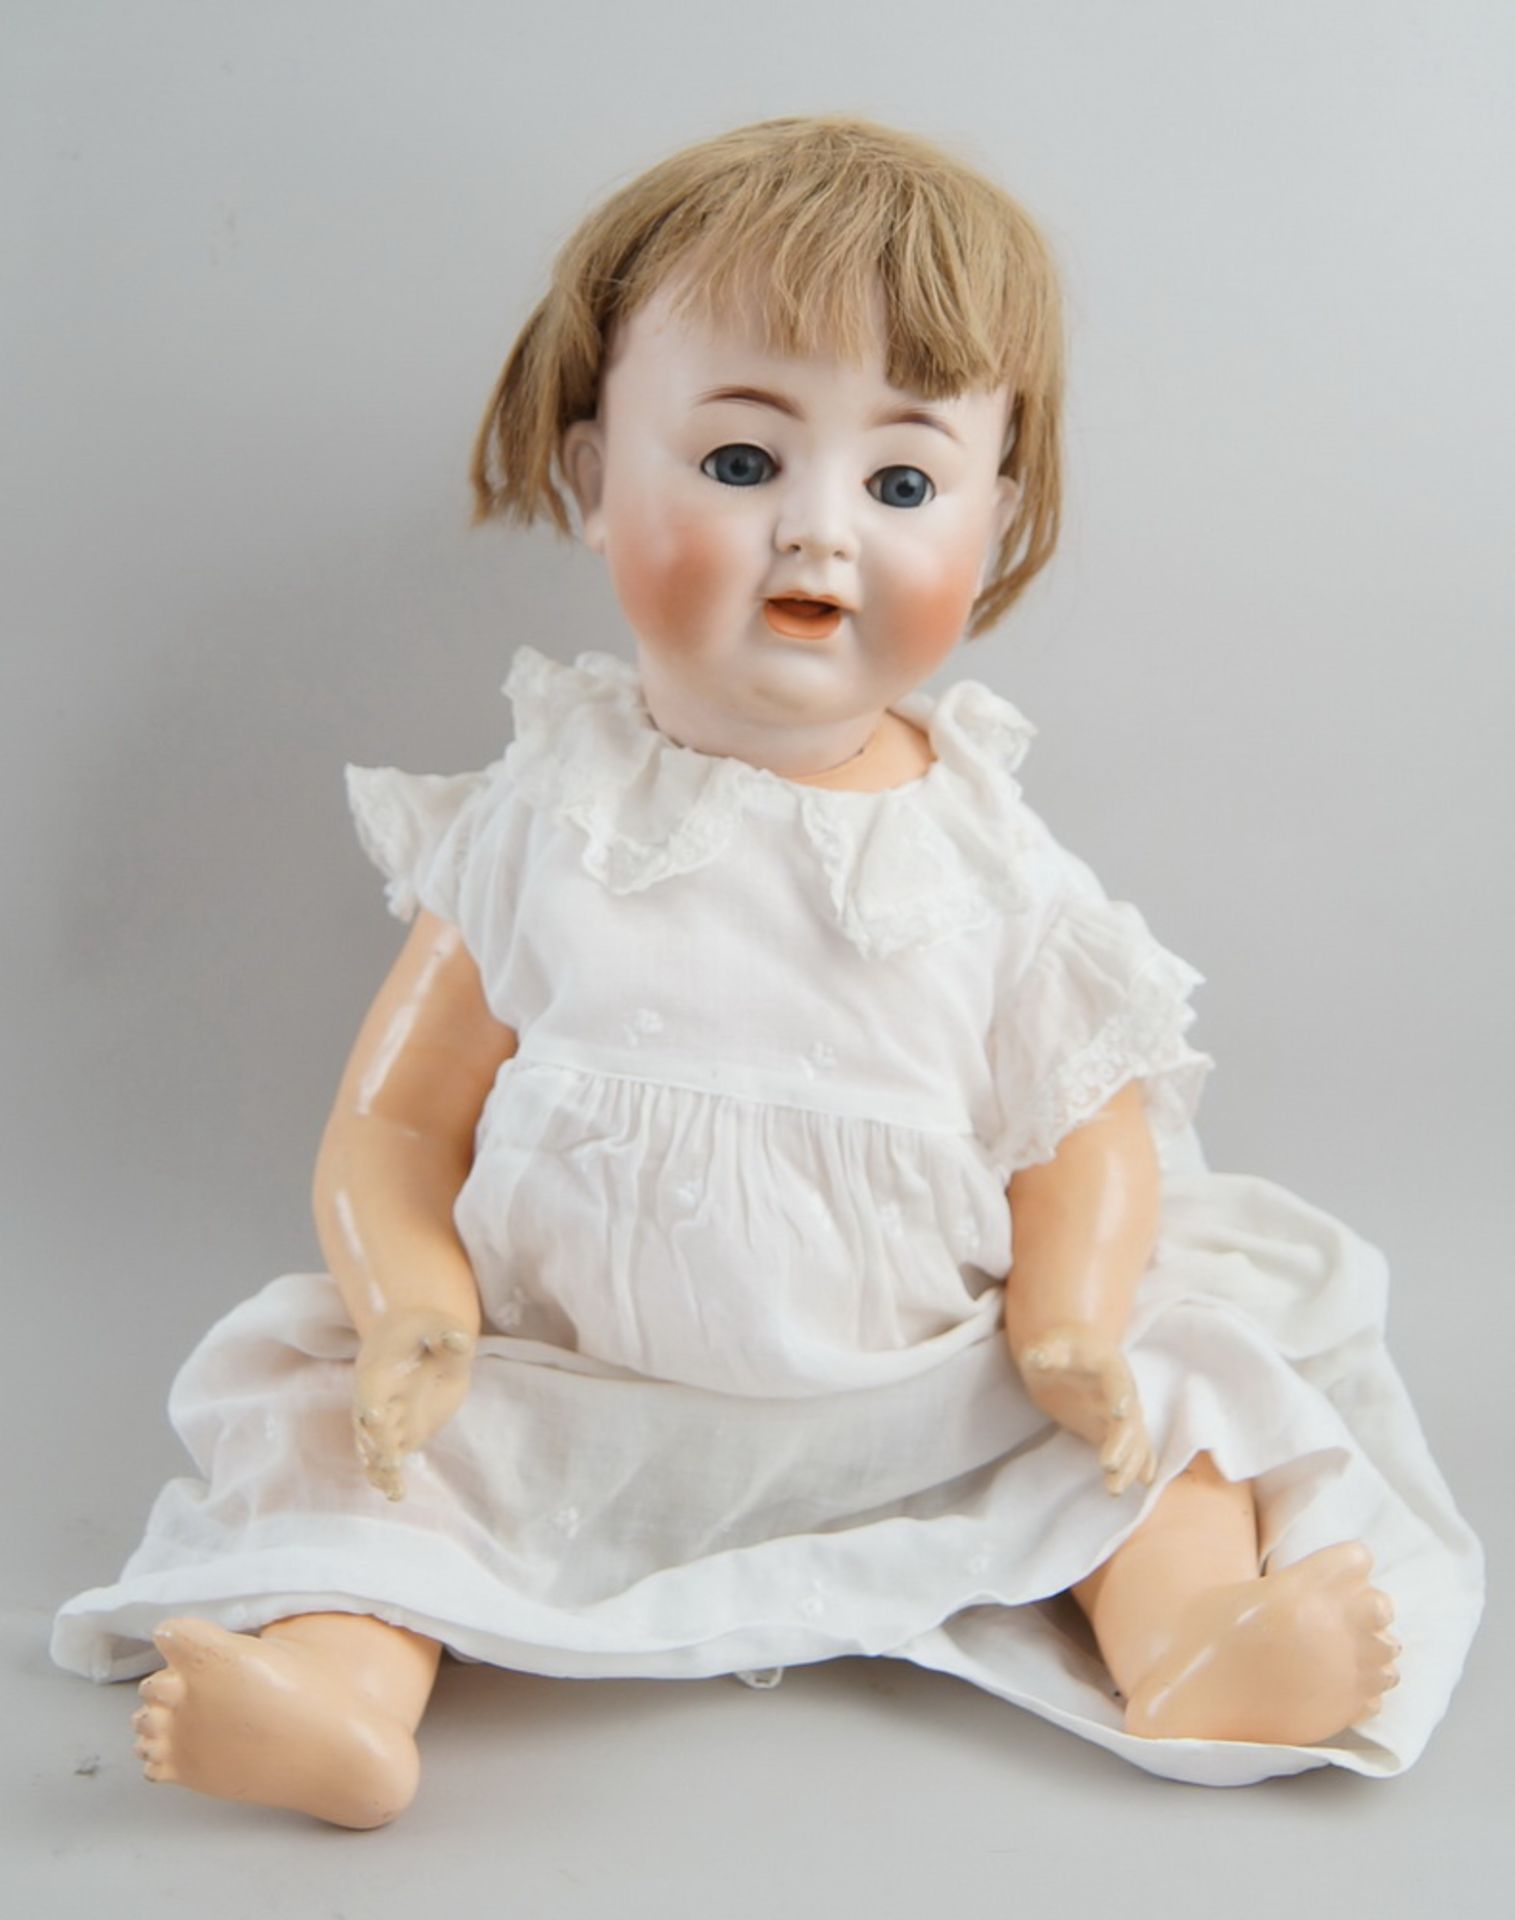 Puppe Alt Beck Gottschalck, 1361, ~ 1920, bespielt, 59cm